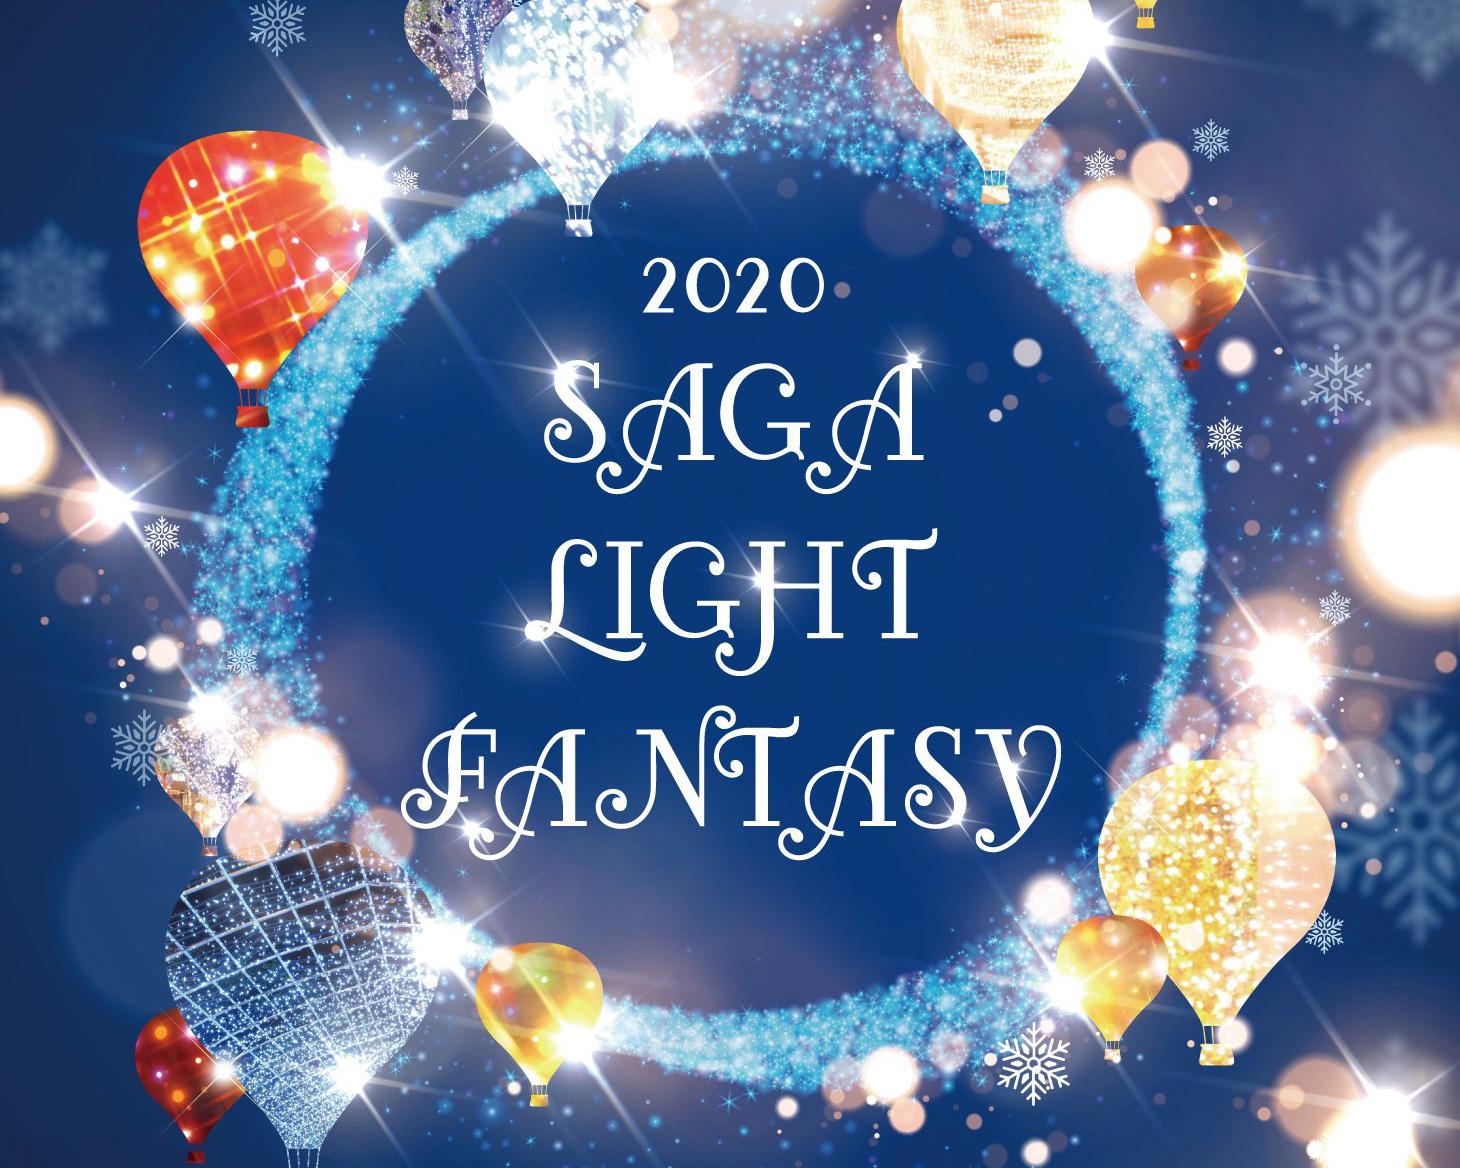 今年で32回目、佐賀の街と心を明るく照らす「サガ・ライトファンタジー」が佐賀県佐賀市で開催